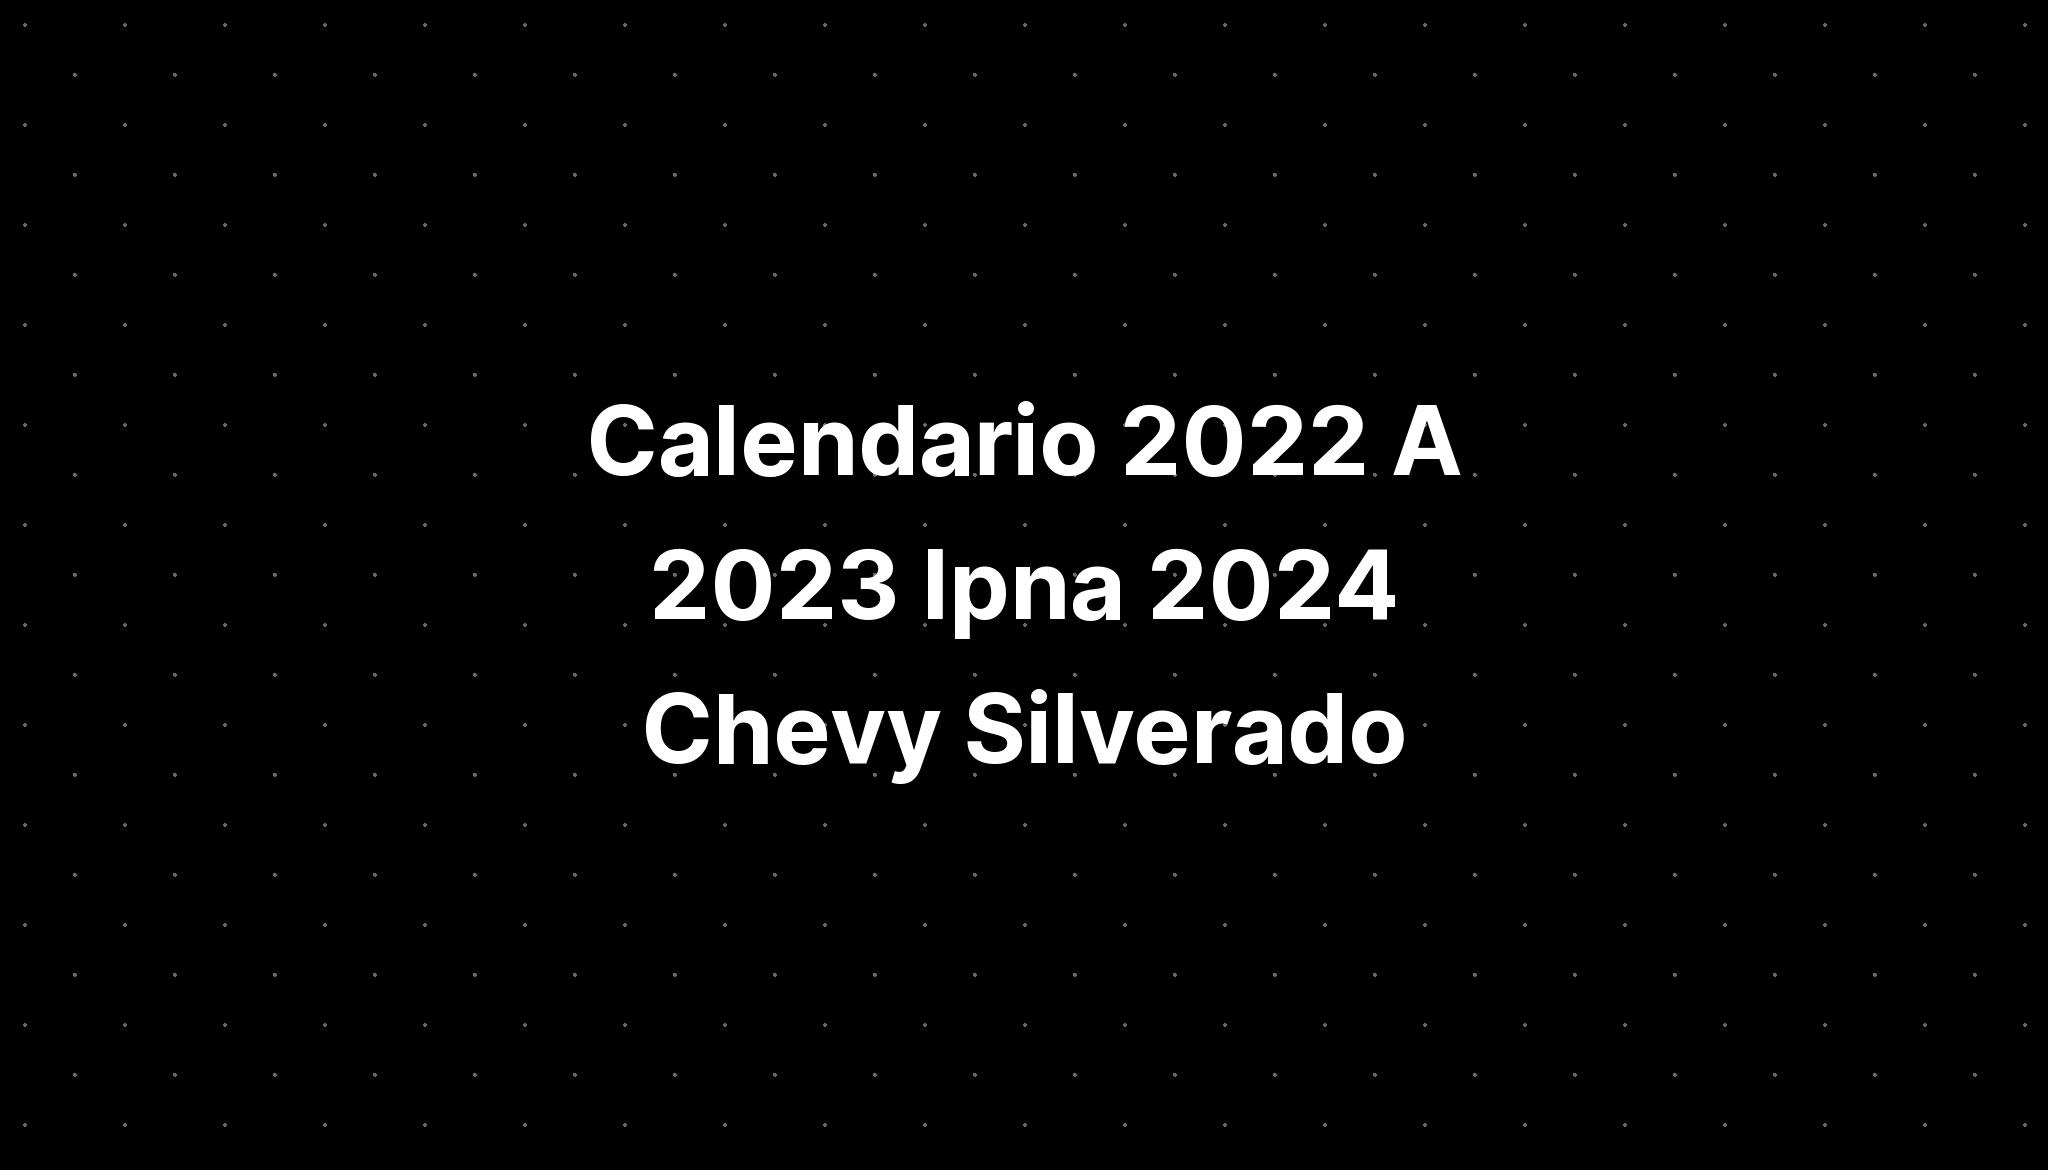 Calendario 2022 A 2023 Ipna 2024 Chevy Silverado IMAGESEE